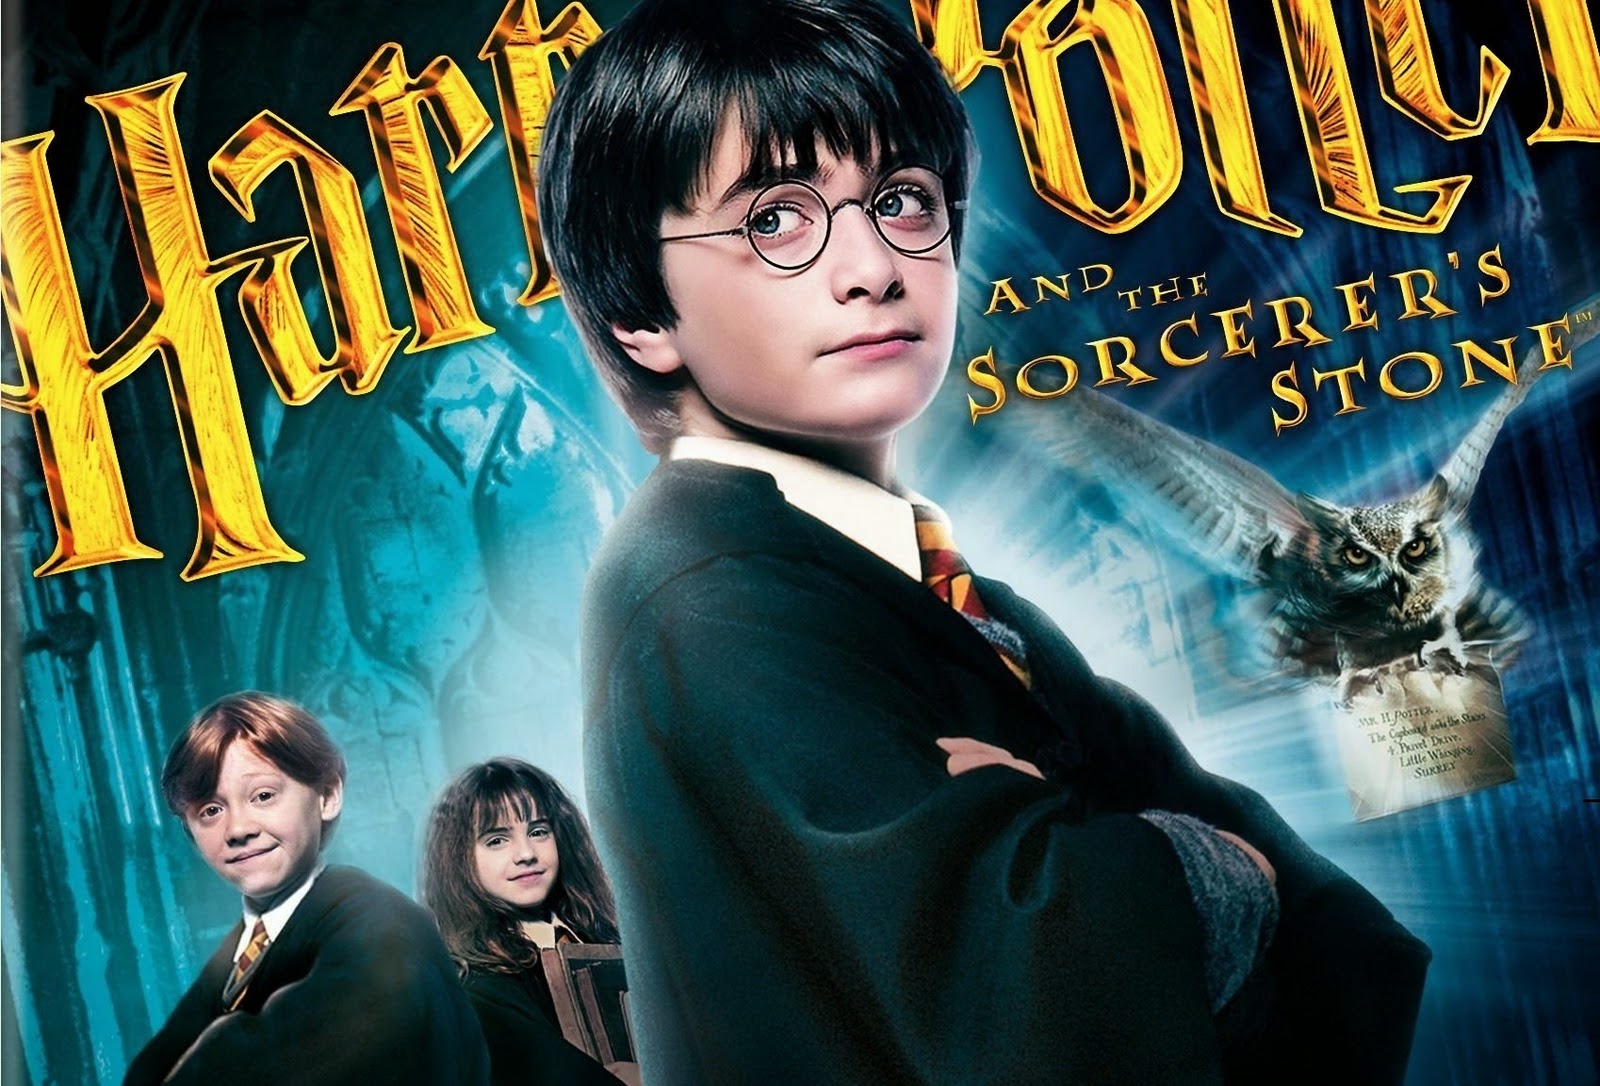 Tải hình ảnh Harry Potter đẹp chất lượng cao Full HD